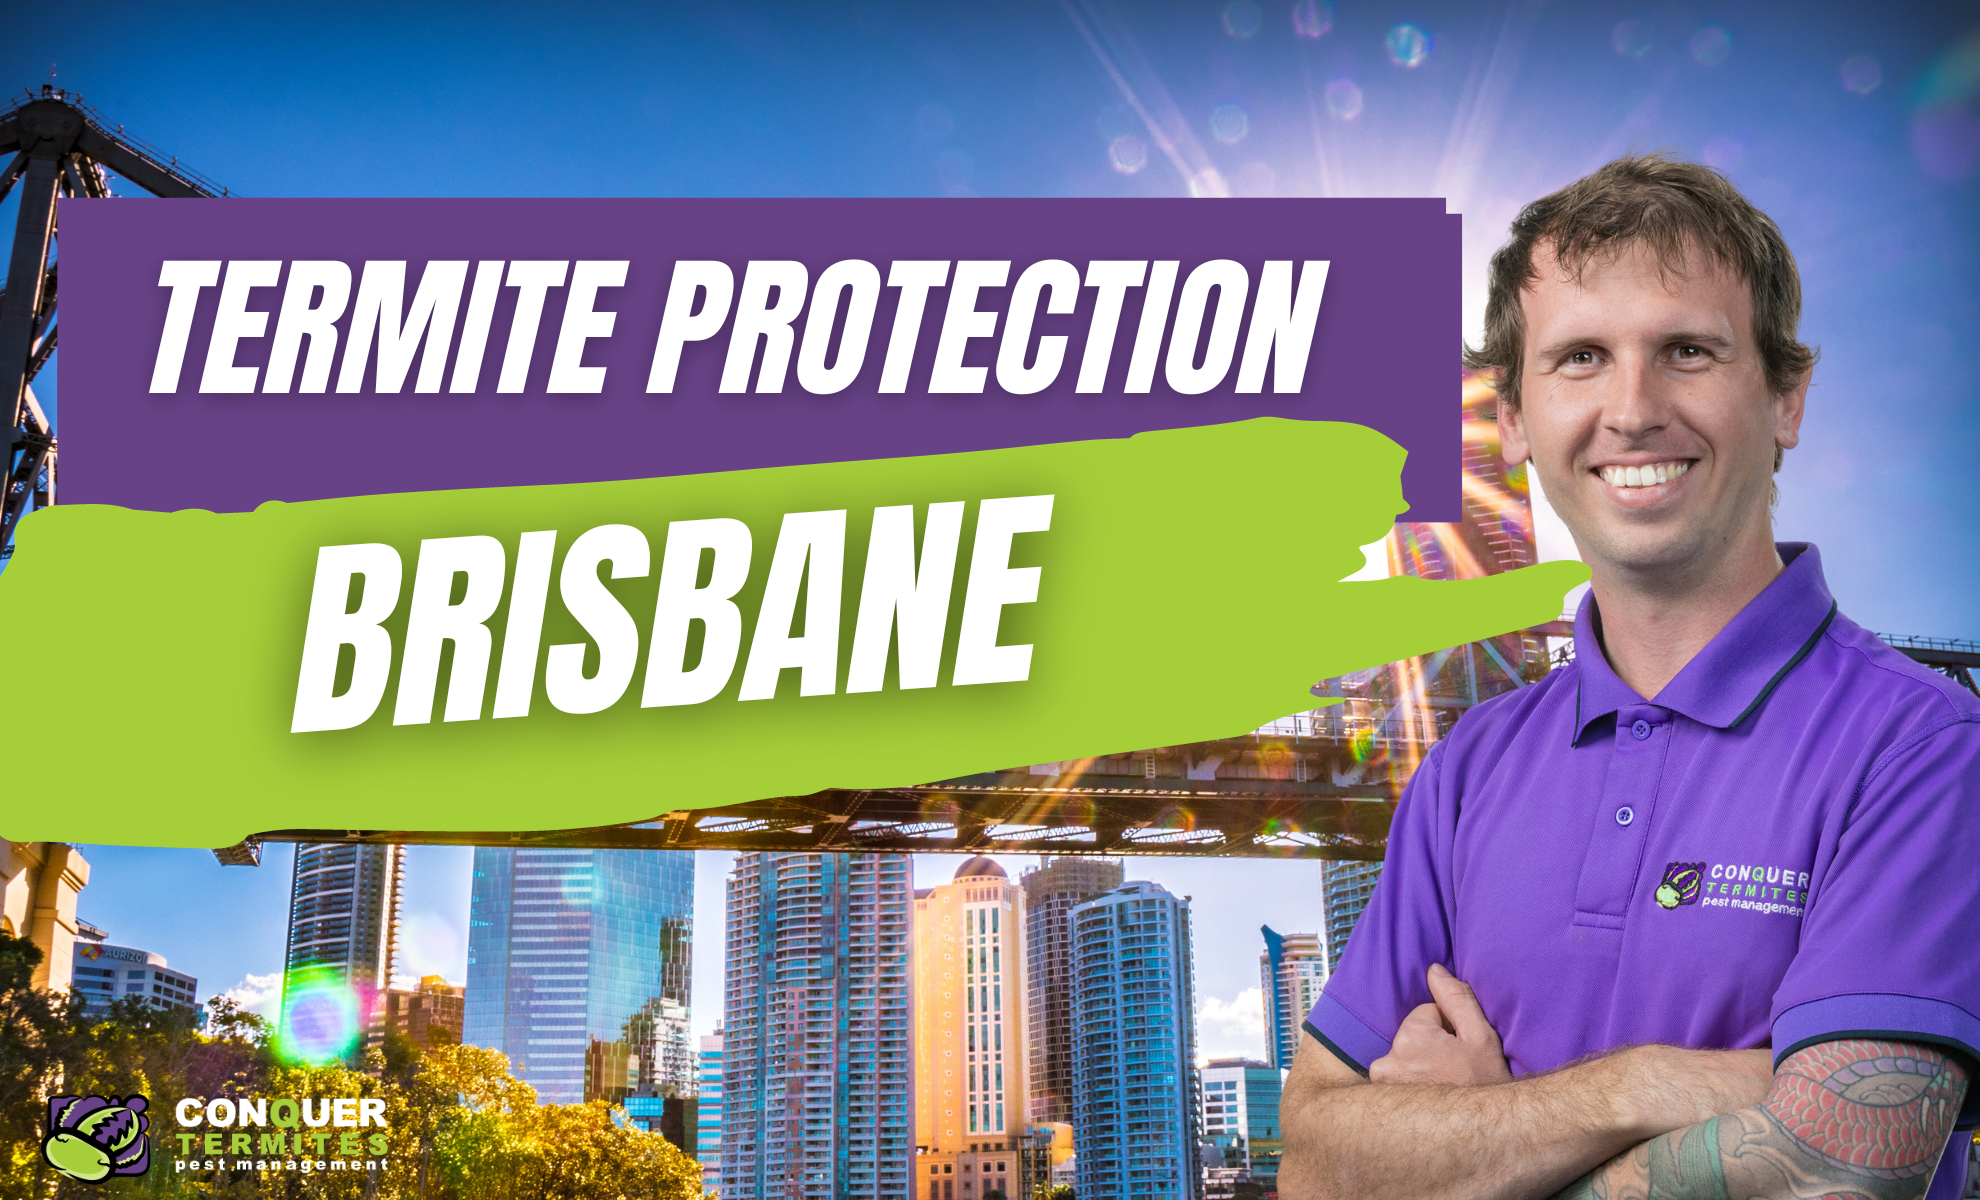 Termite Management in Brisbane!